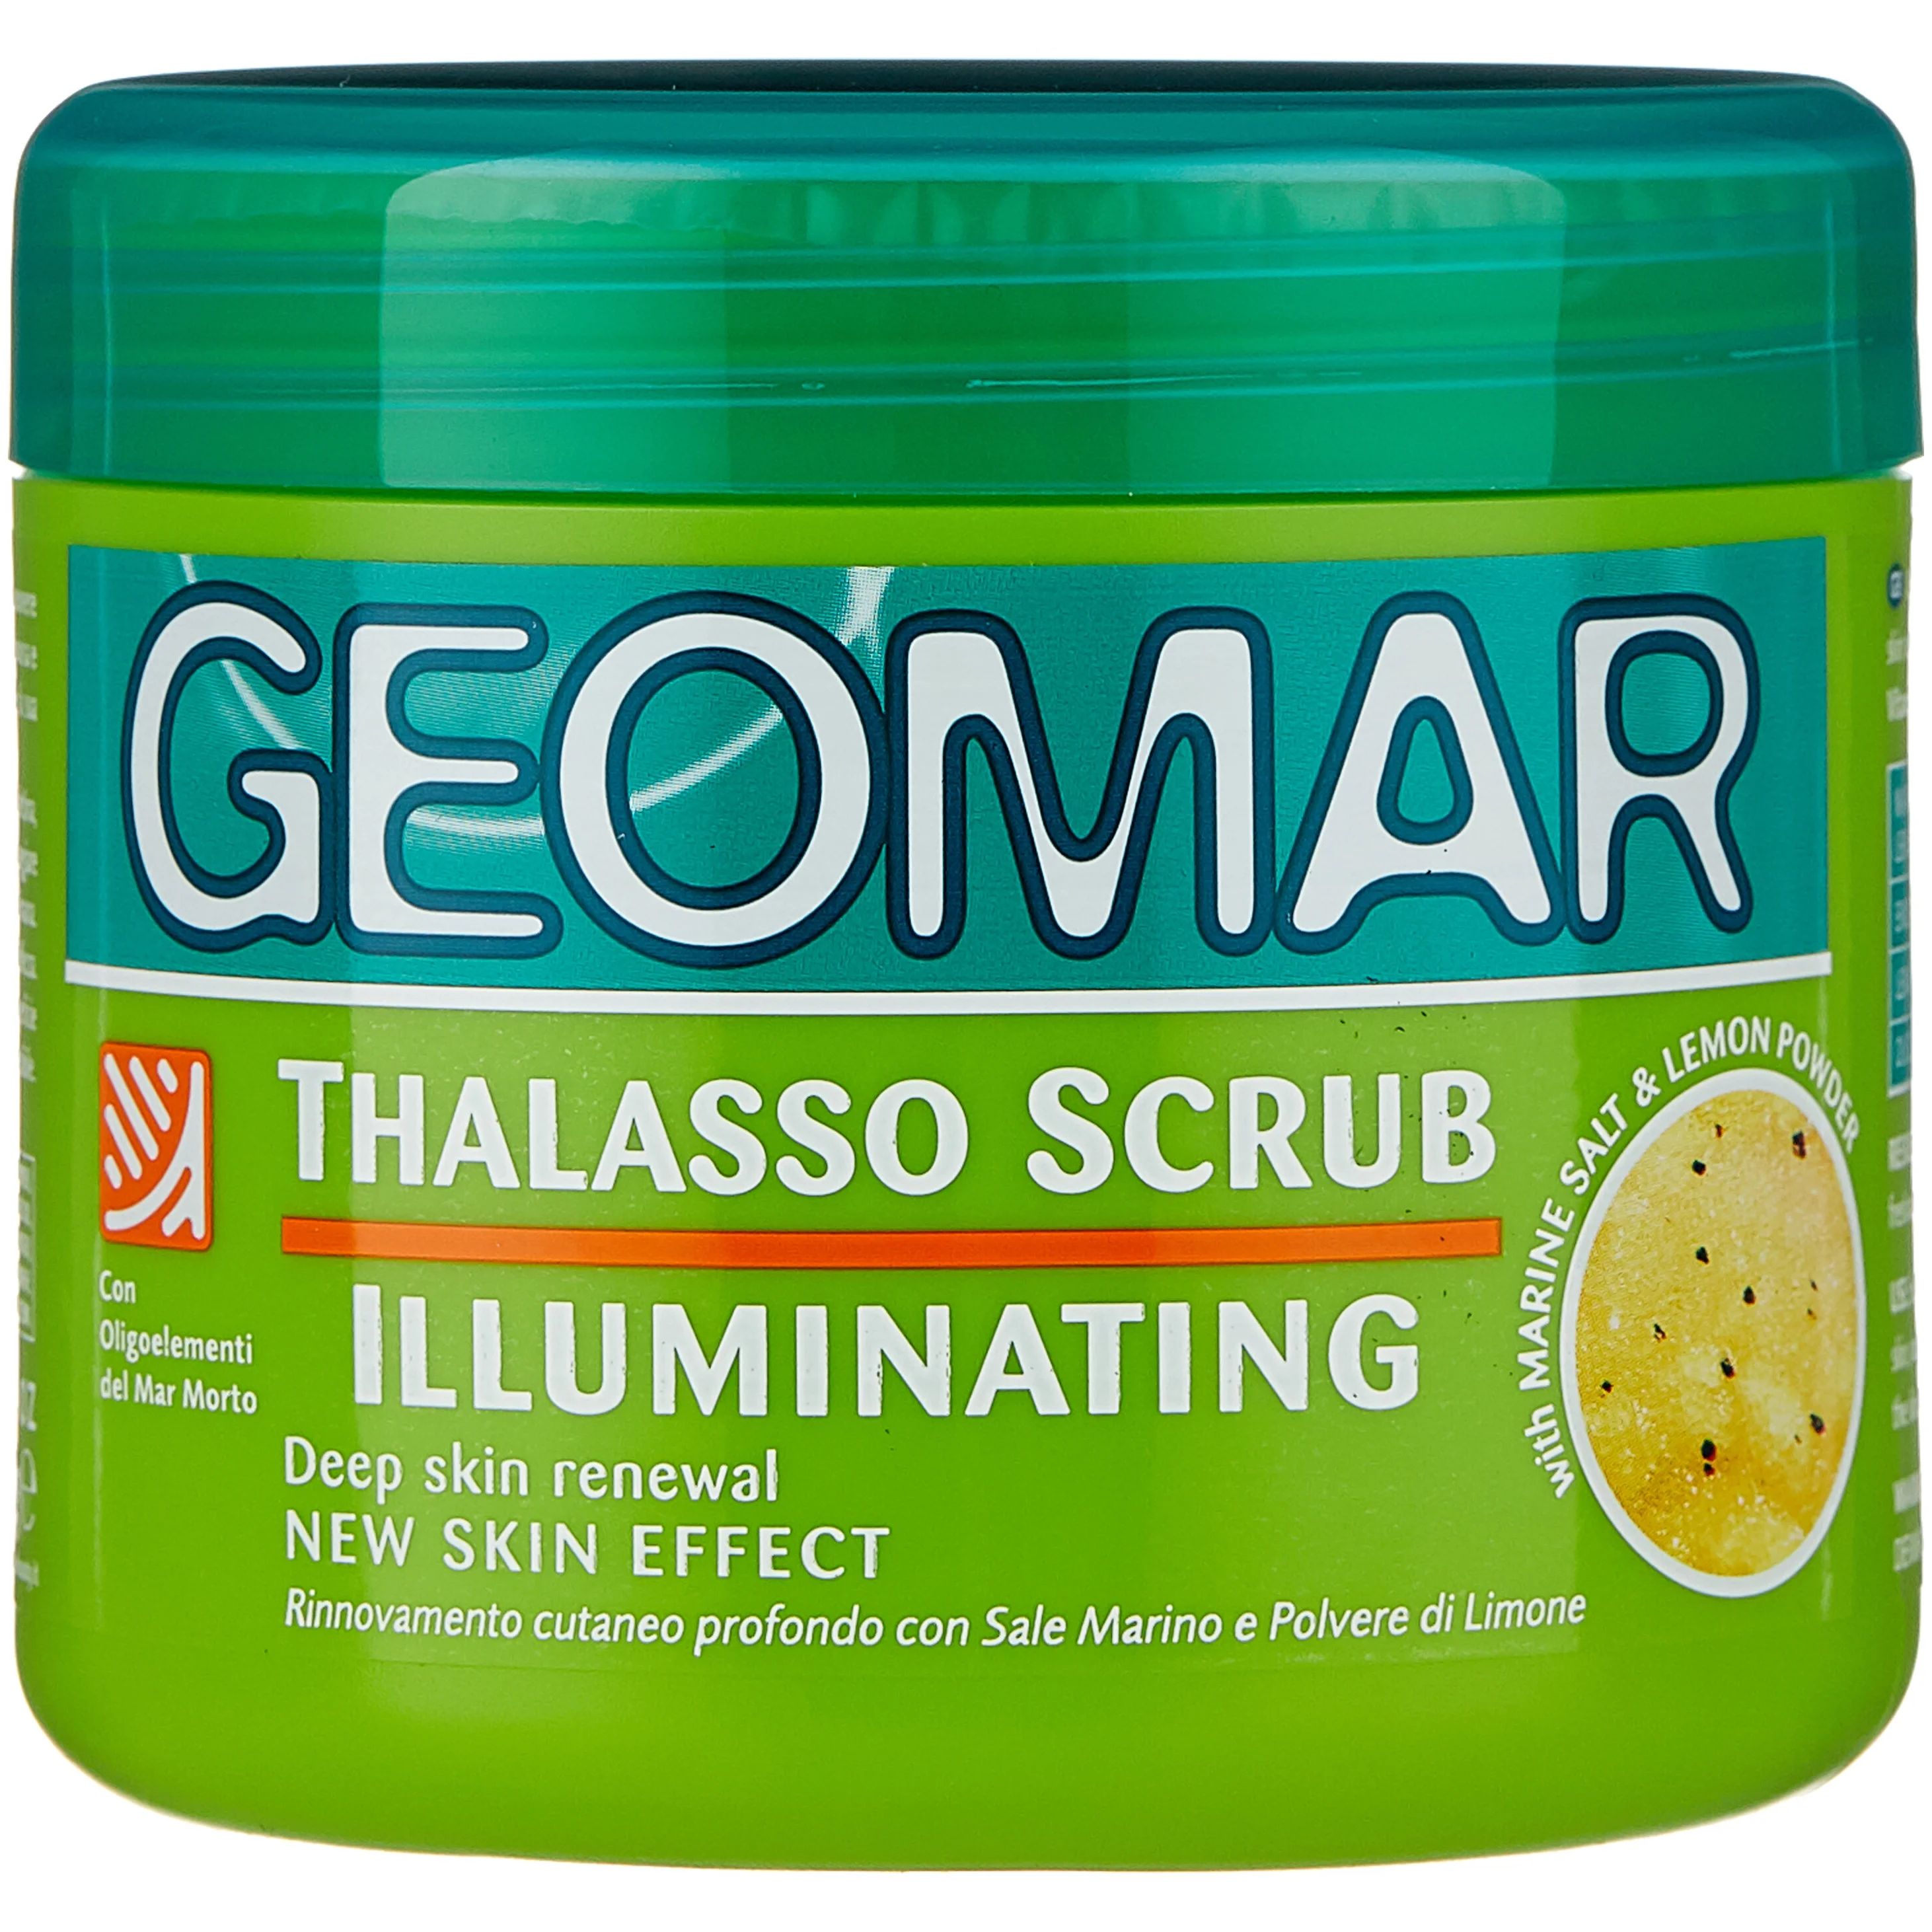 Скраб-талассо для тела Geomar Illuminating лимон 600г скраб для тела geomar грязевой антицеллюлитный 2в1 650г